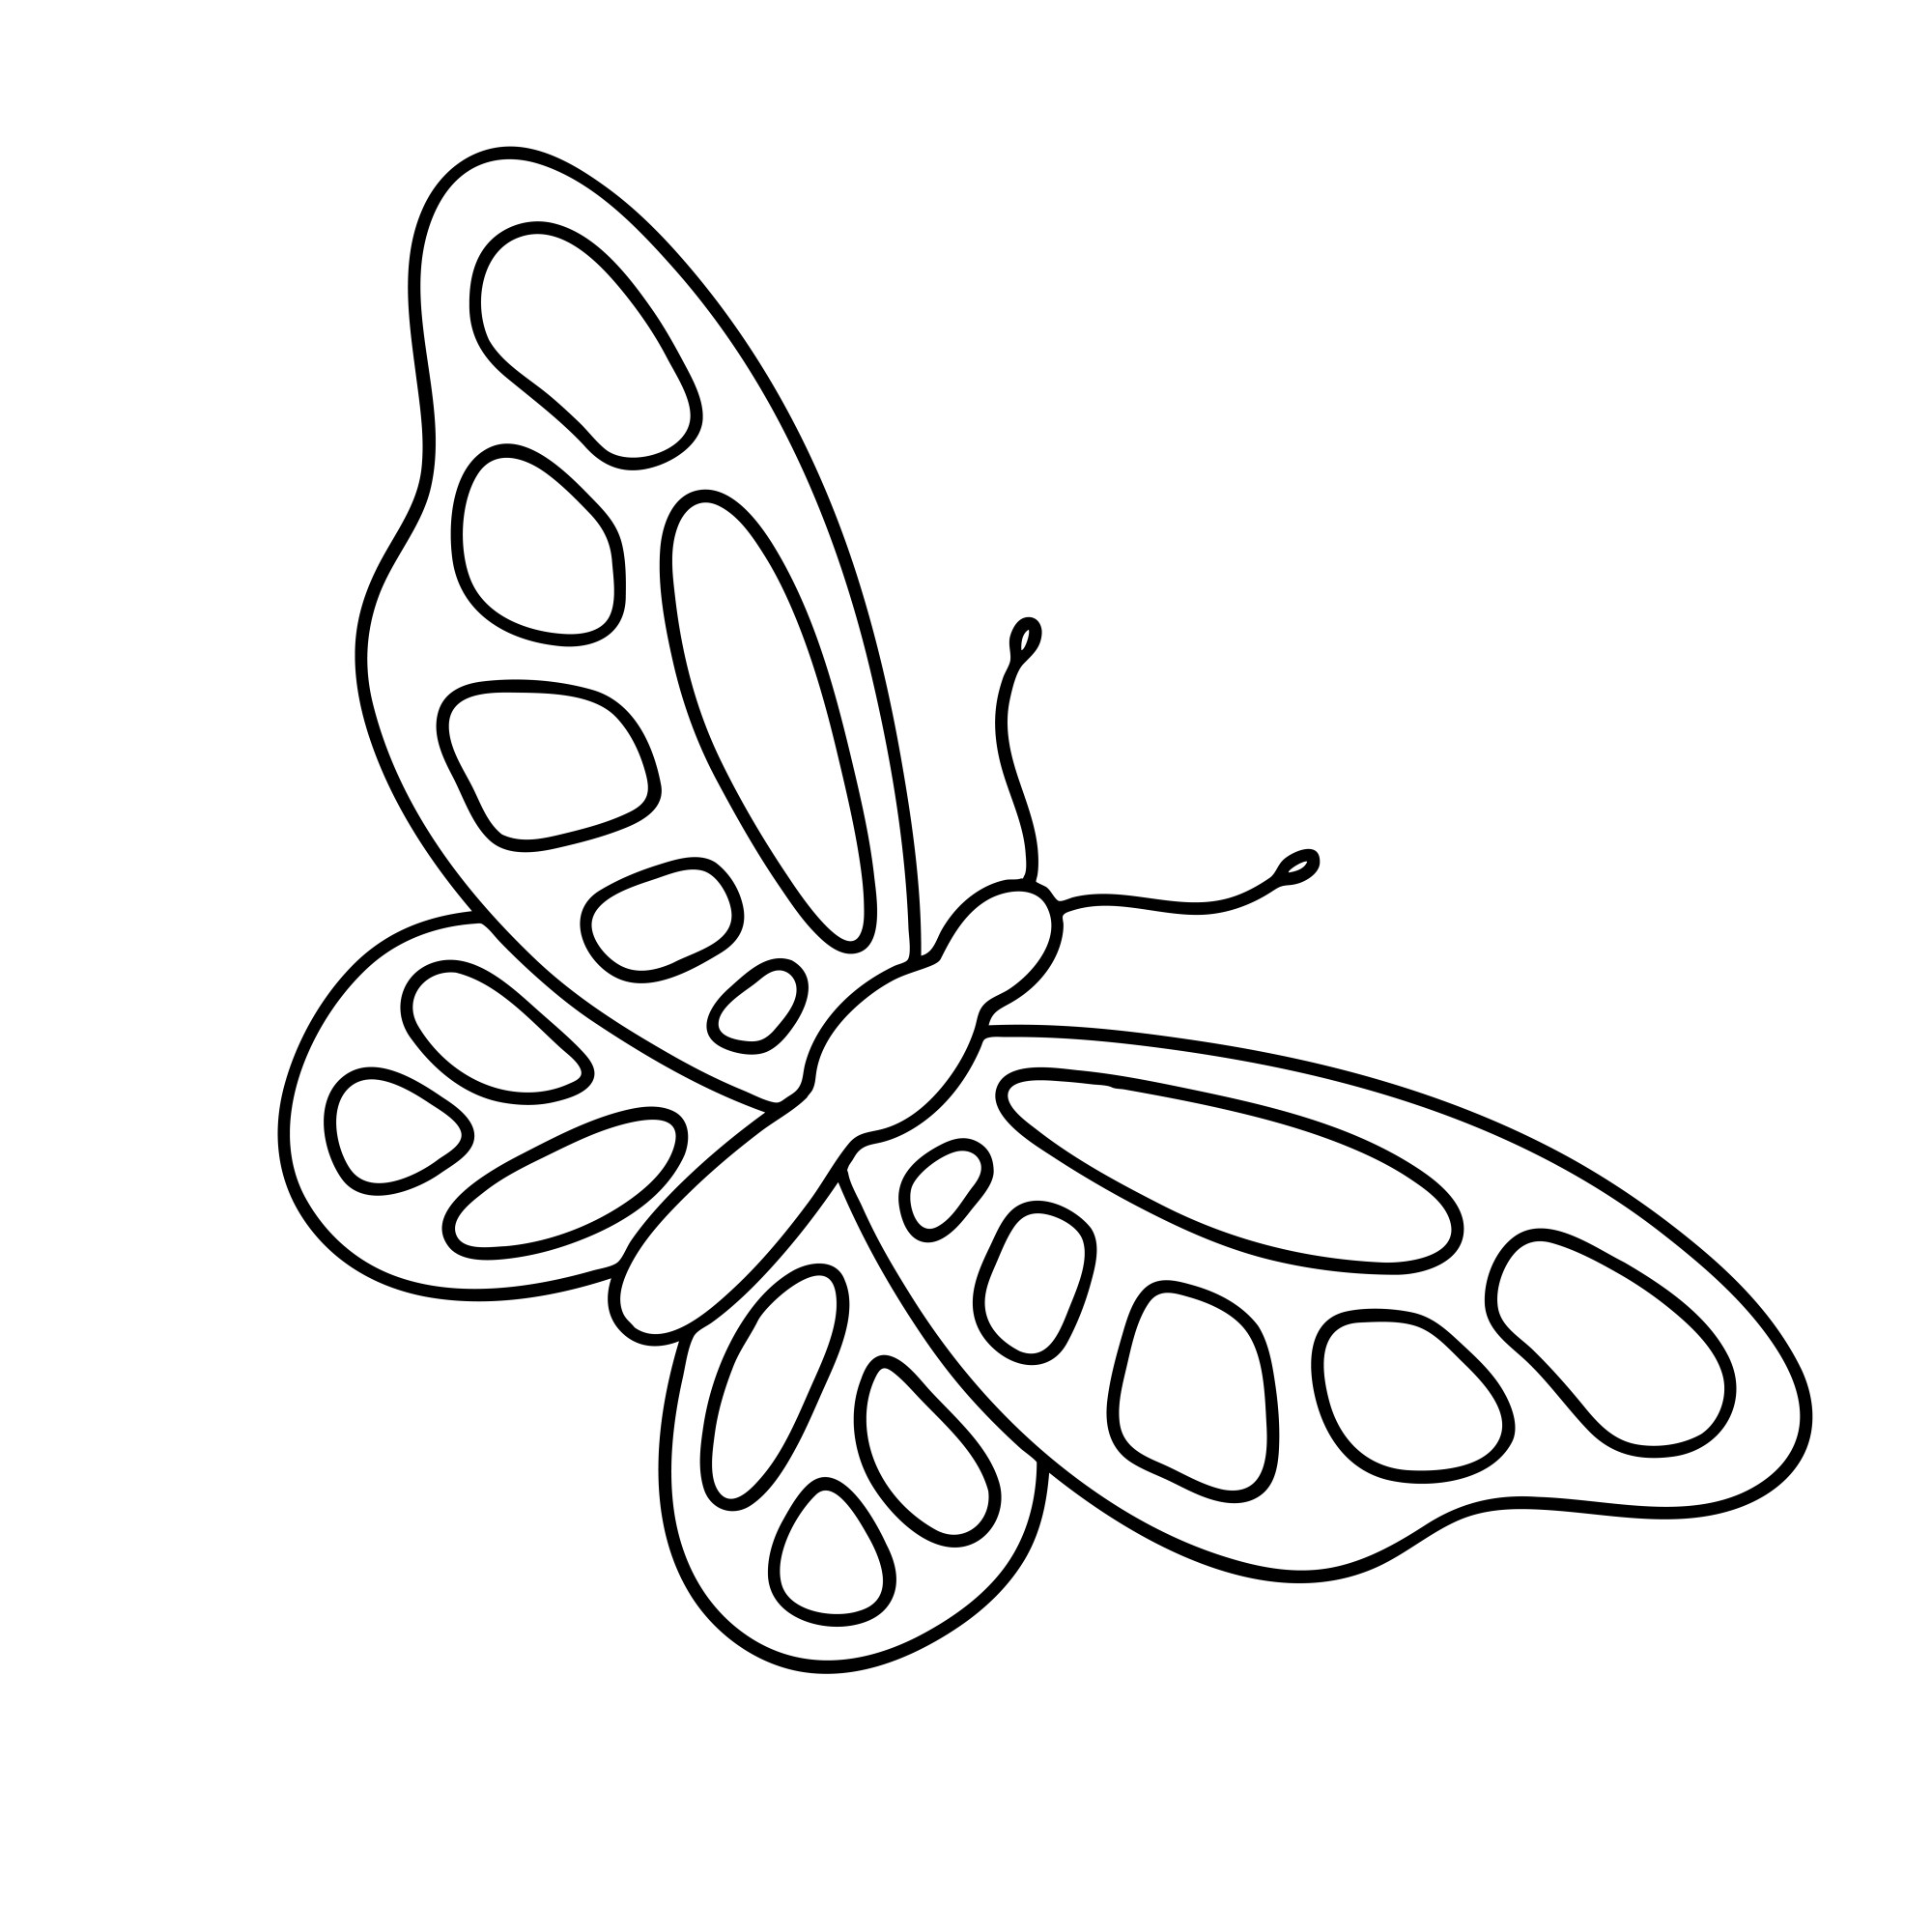 Раскраска для детей: простая бабочка с крыльями